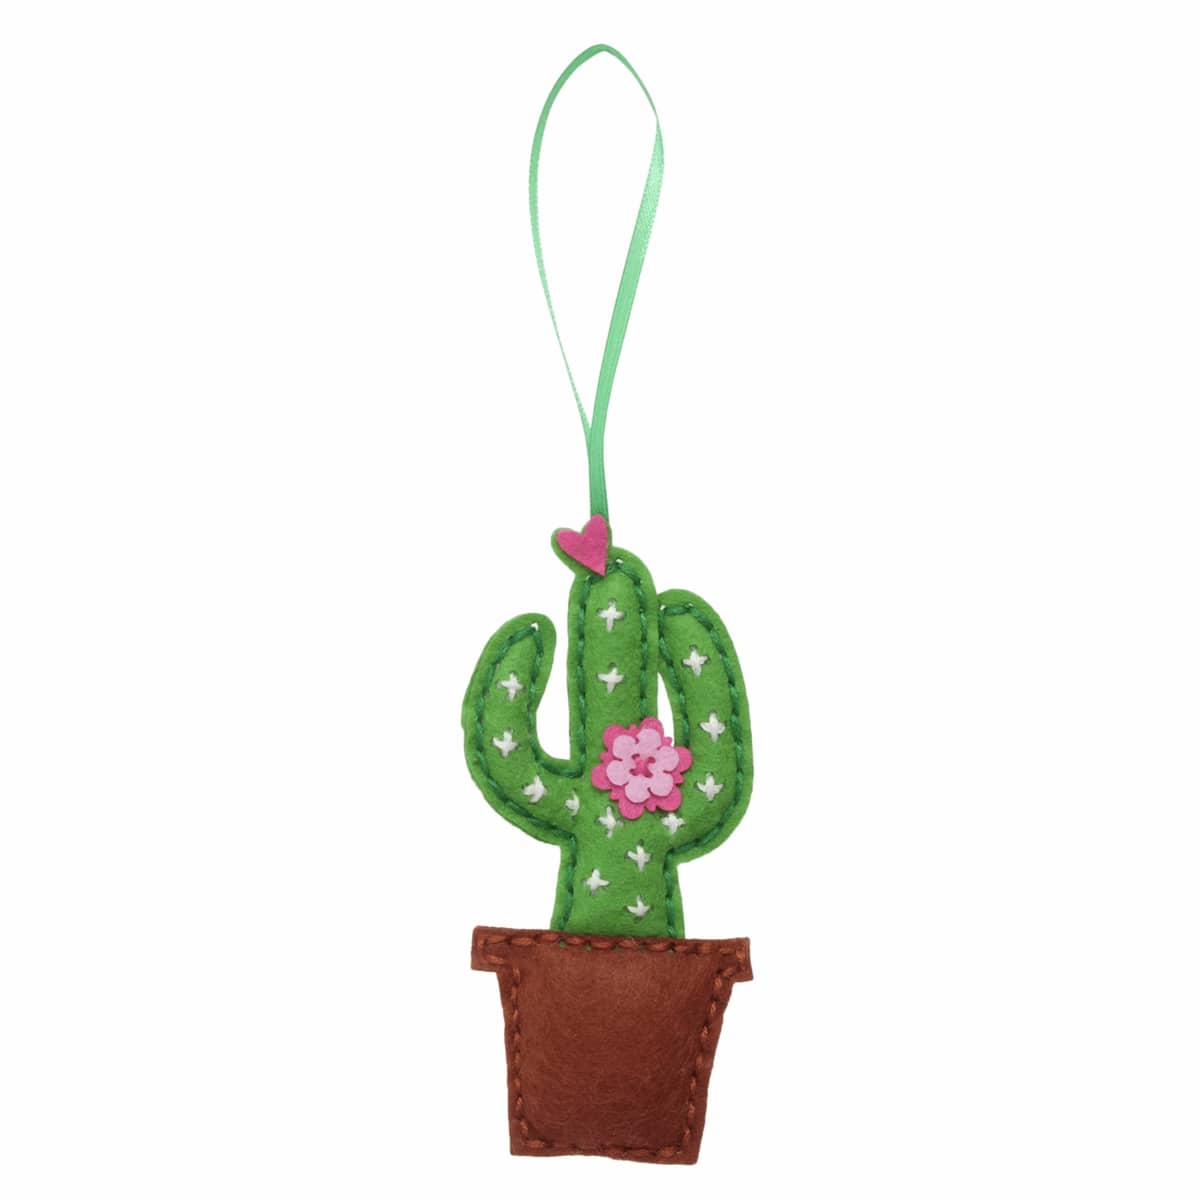 Children's Felt Decoration Kit: Cactus - Vera Fabrics